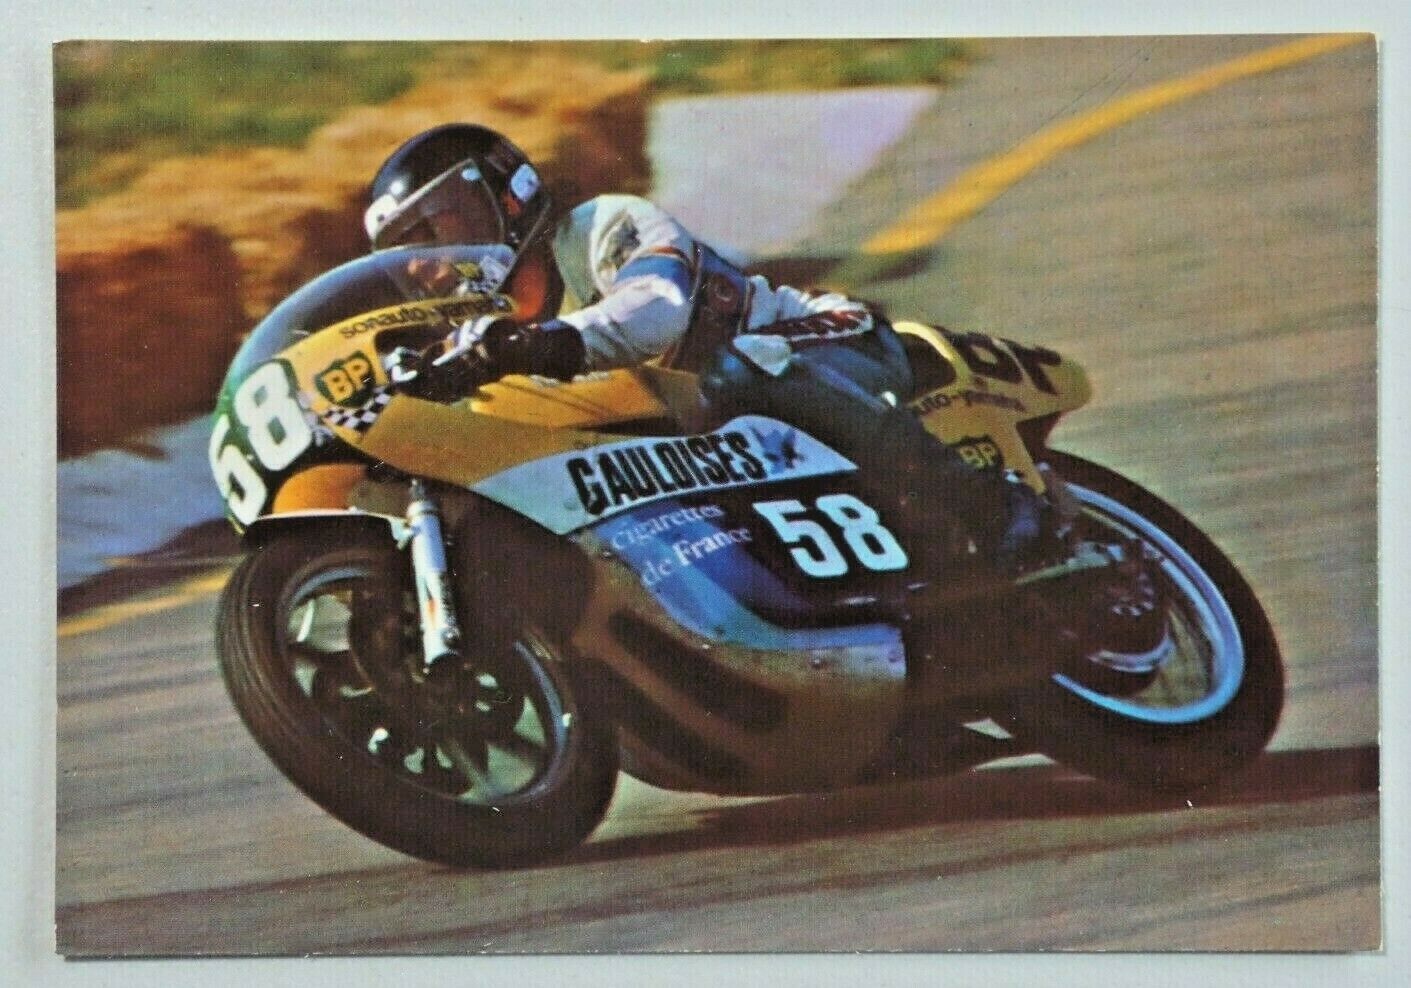 Marco Simoncelli Motorcycle Racer Yamaha Motorcycle No. 58 Postcard 8051